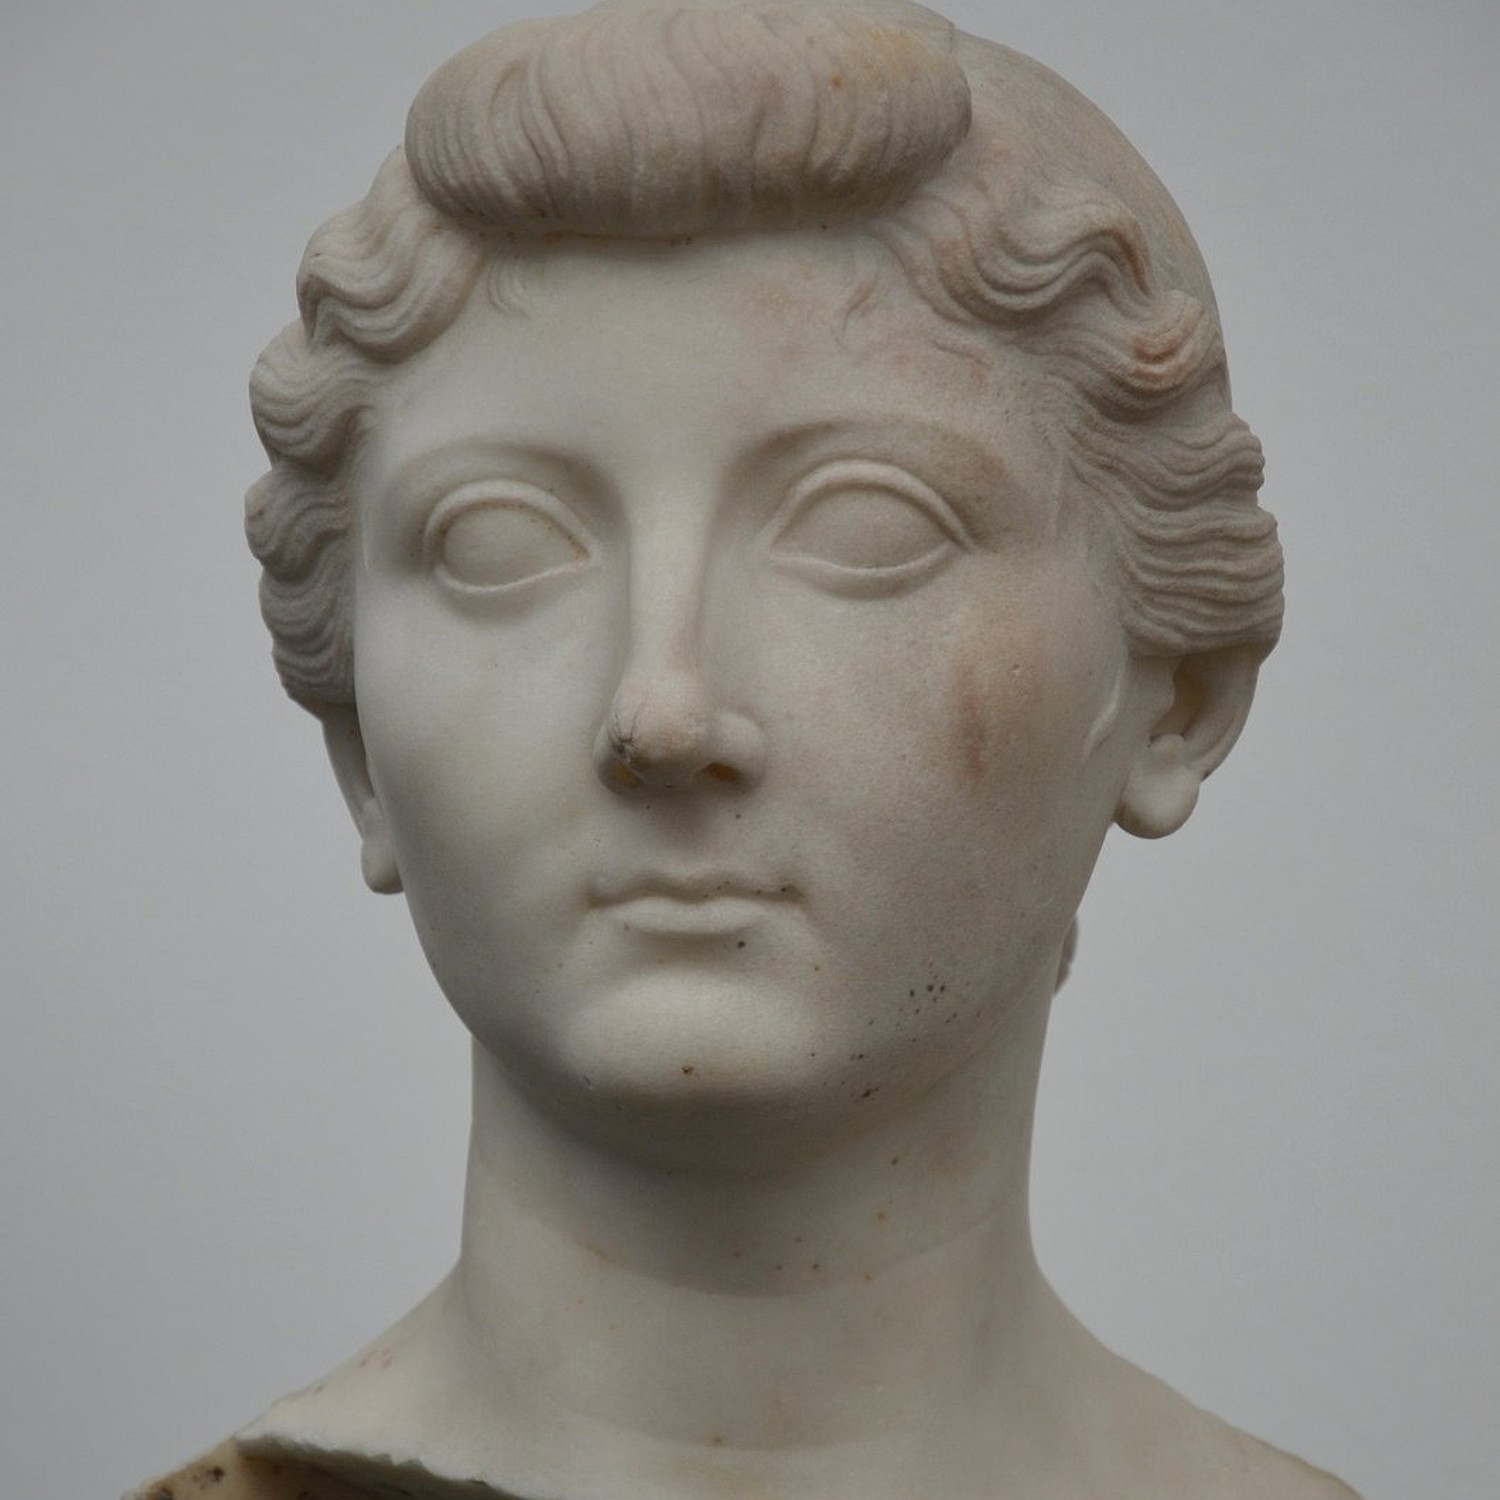 Livia Drusila: la más influyente emperatriz de Roma